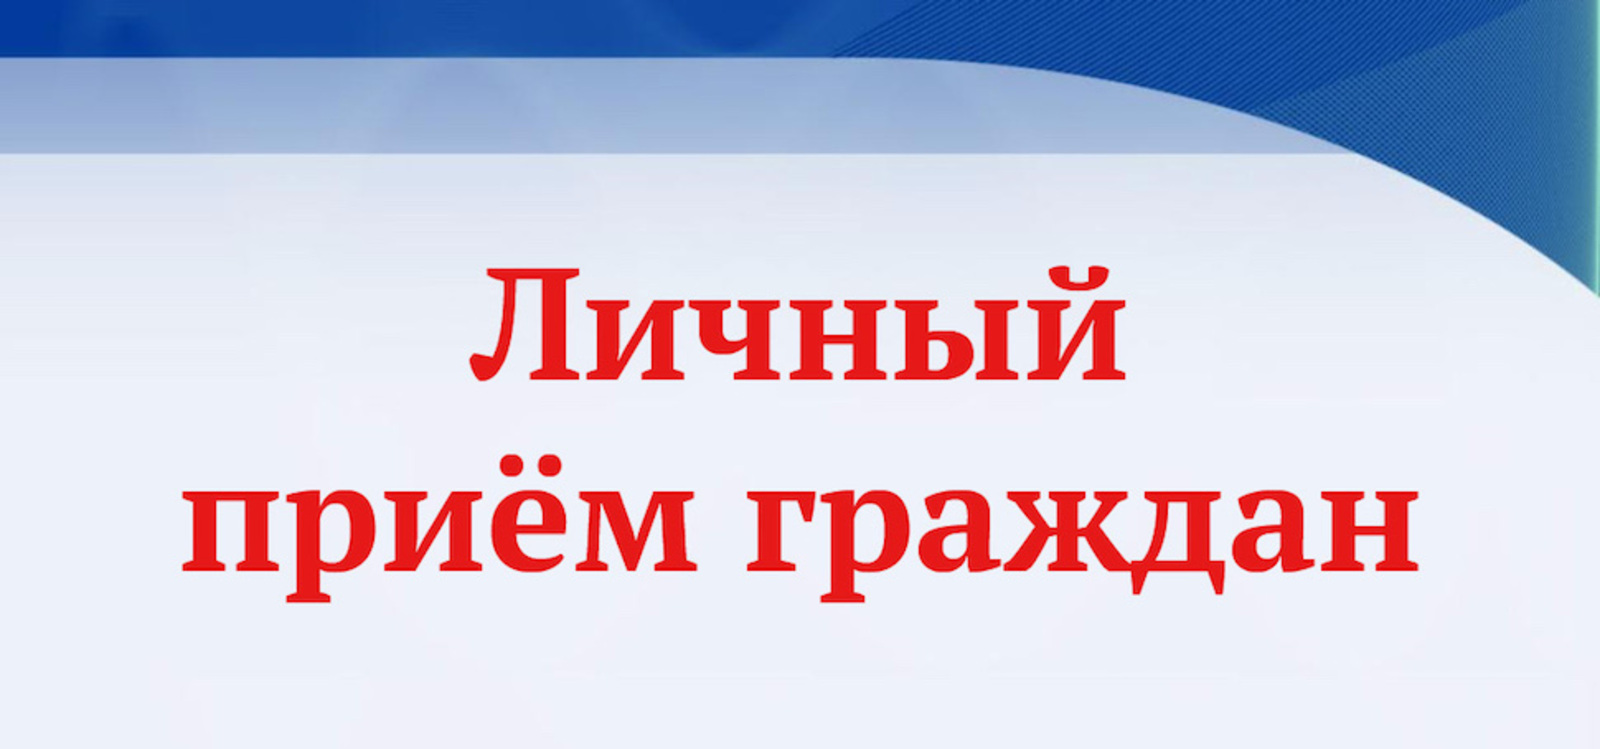 Замминистра промышленности и научно-технического развития Омской области проведет личный прием граждан.